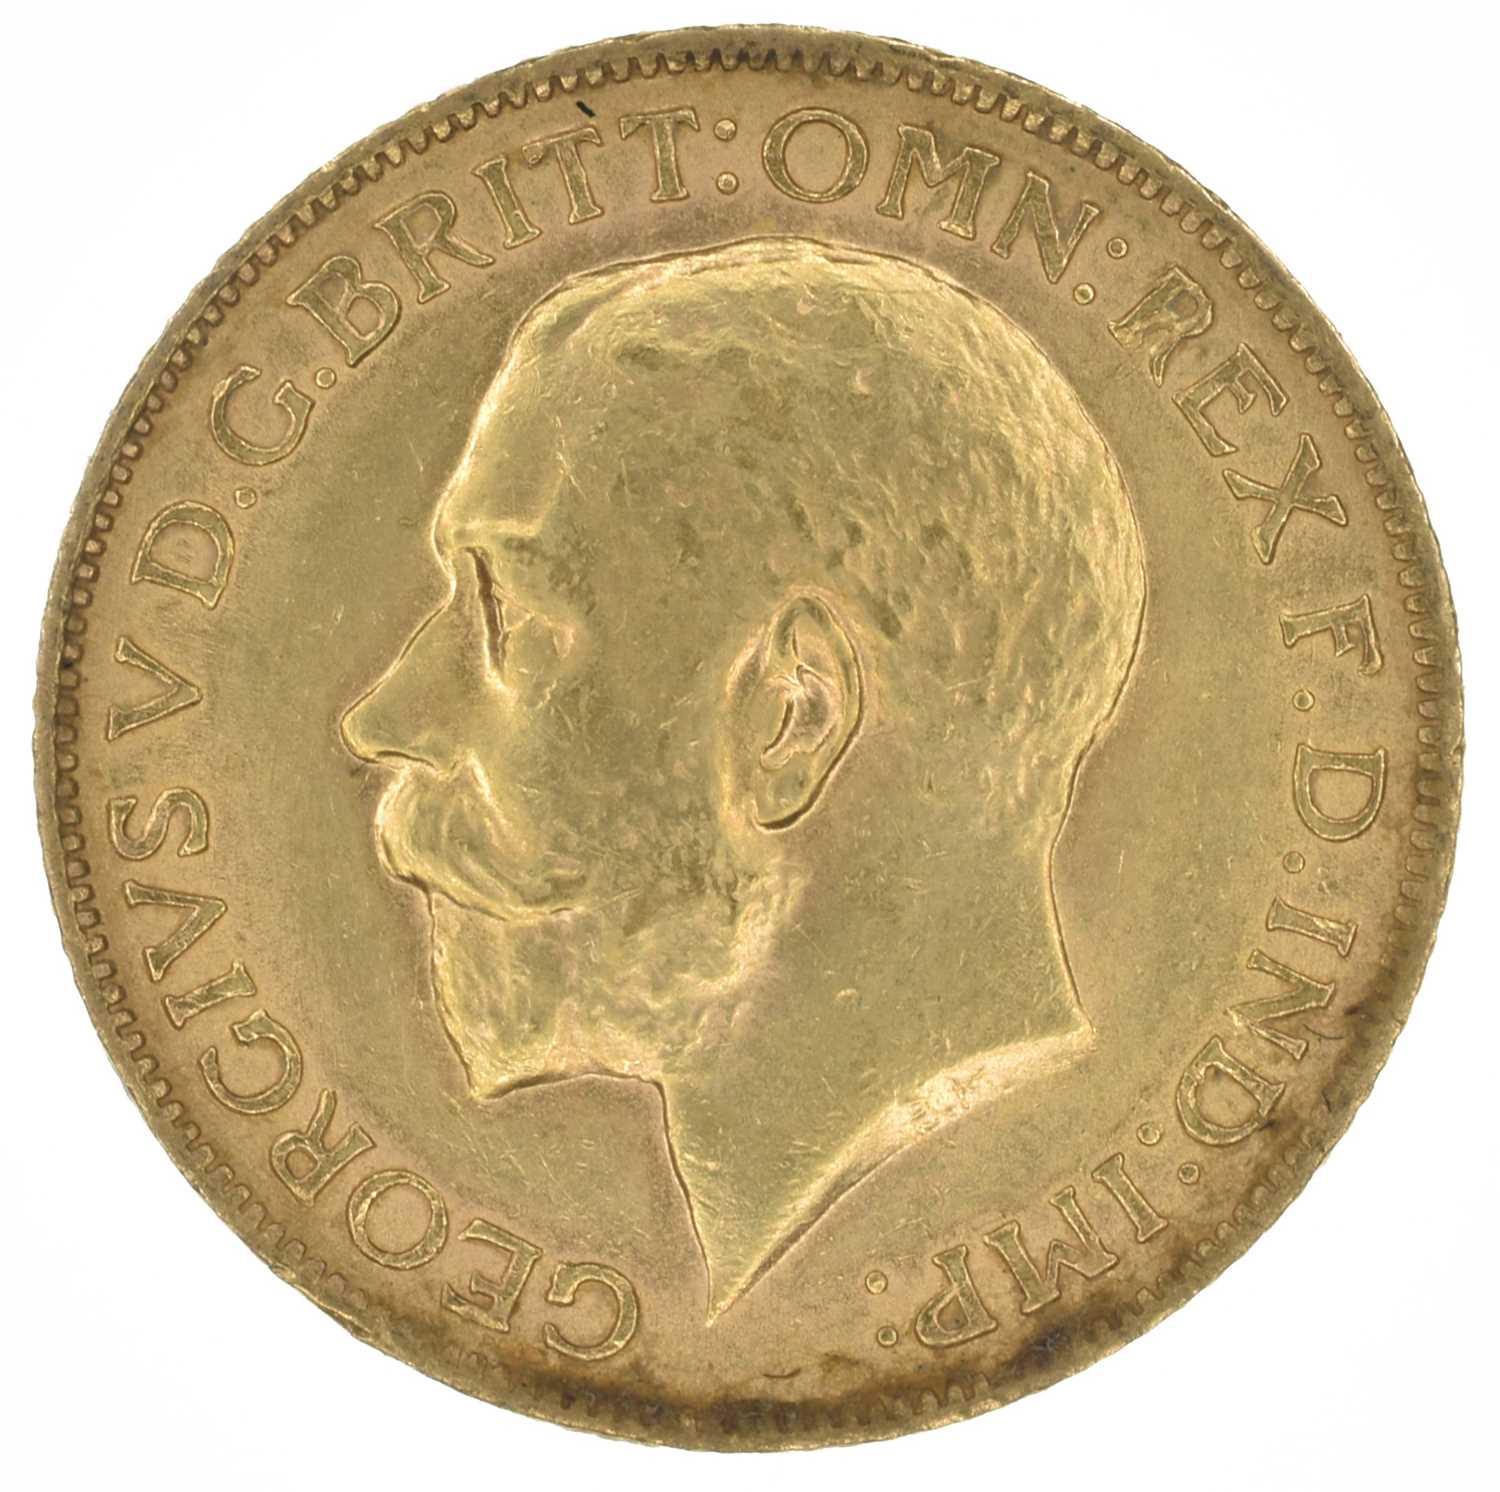 King George V, Sovereign, 1912.